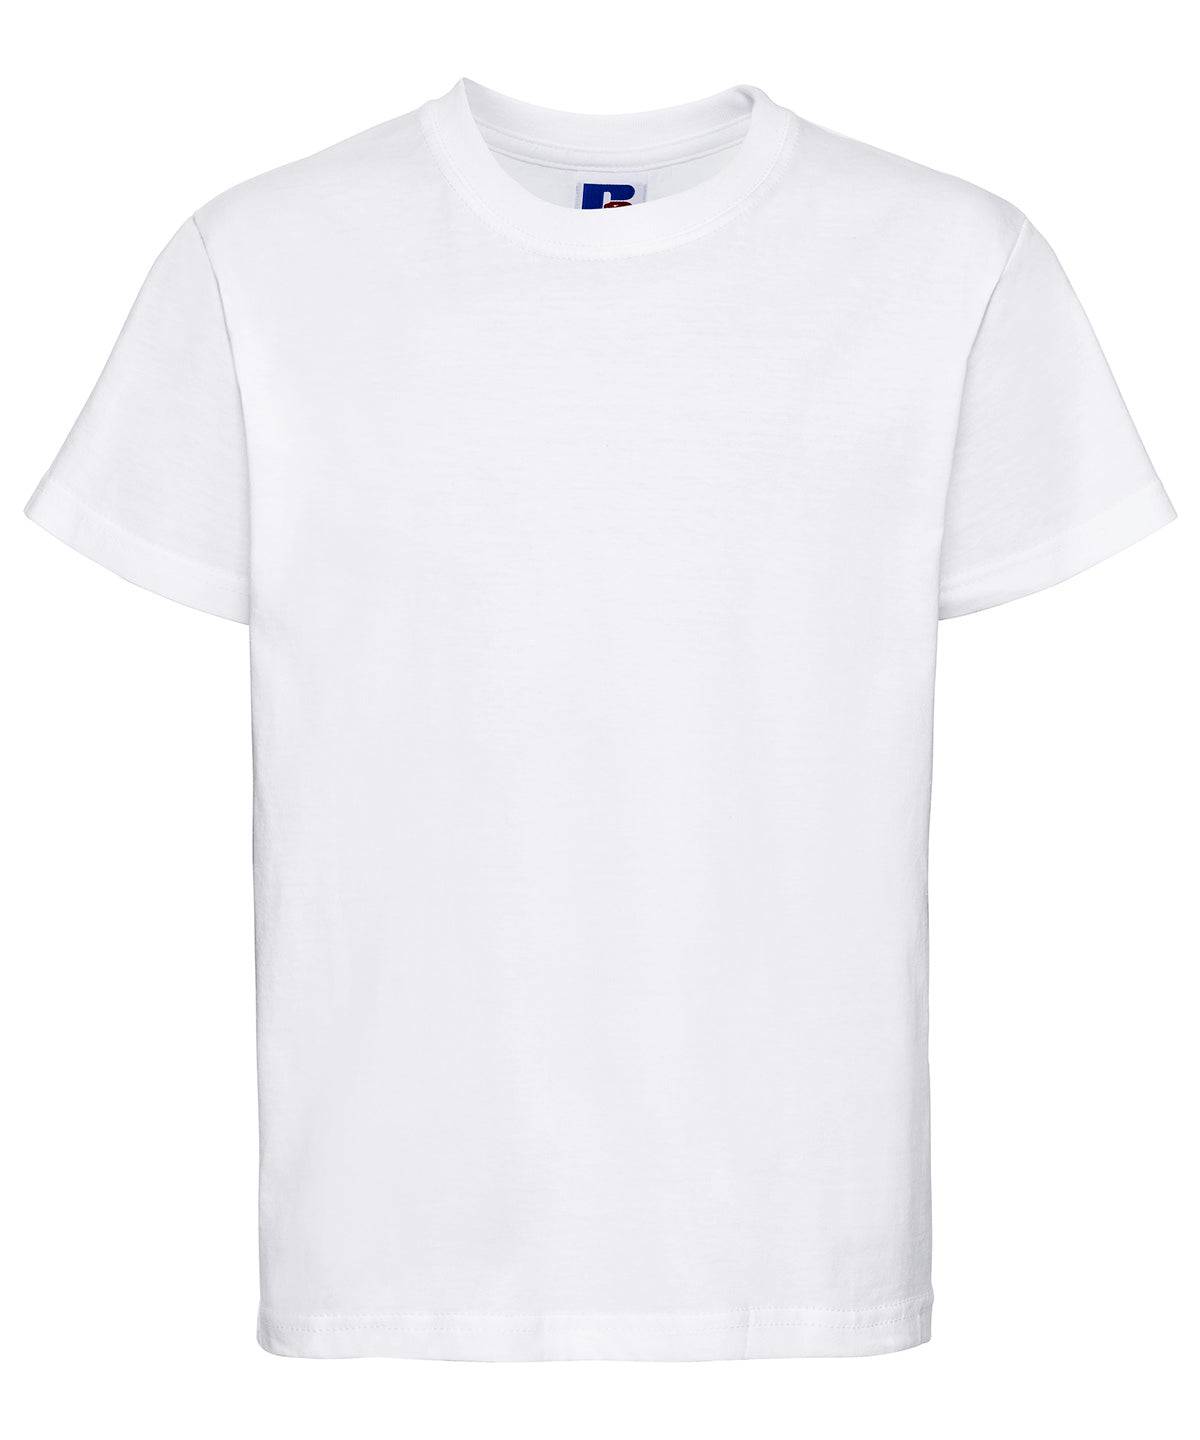 White - Kids t-shirt